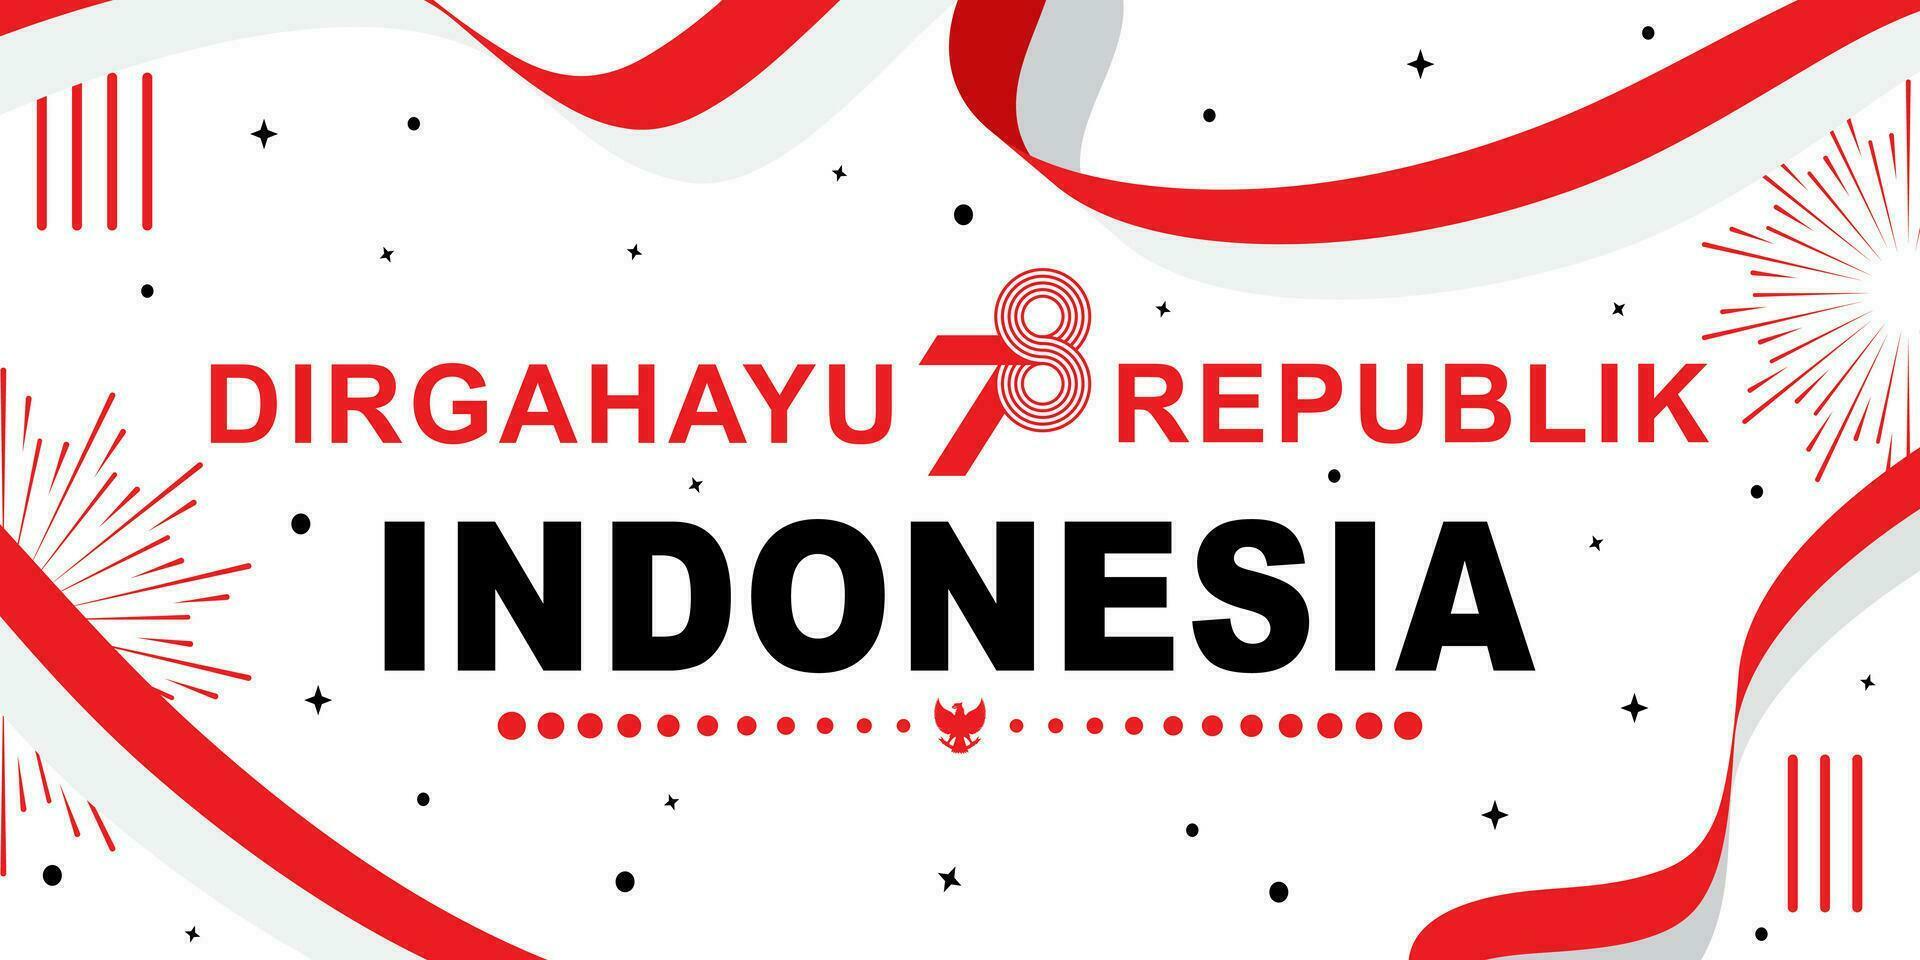 plano dibujos animados bandera diseño saludo dirgahayu republik Indonesia ke-78, cuales medio el 78º indonesio independencia día vector